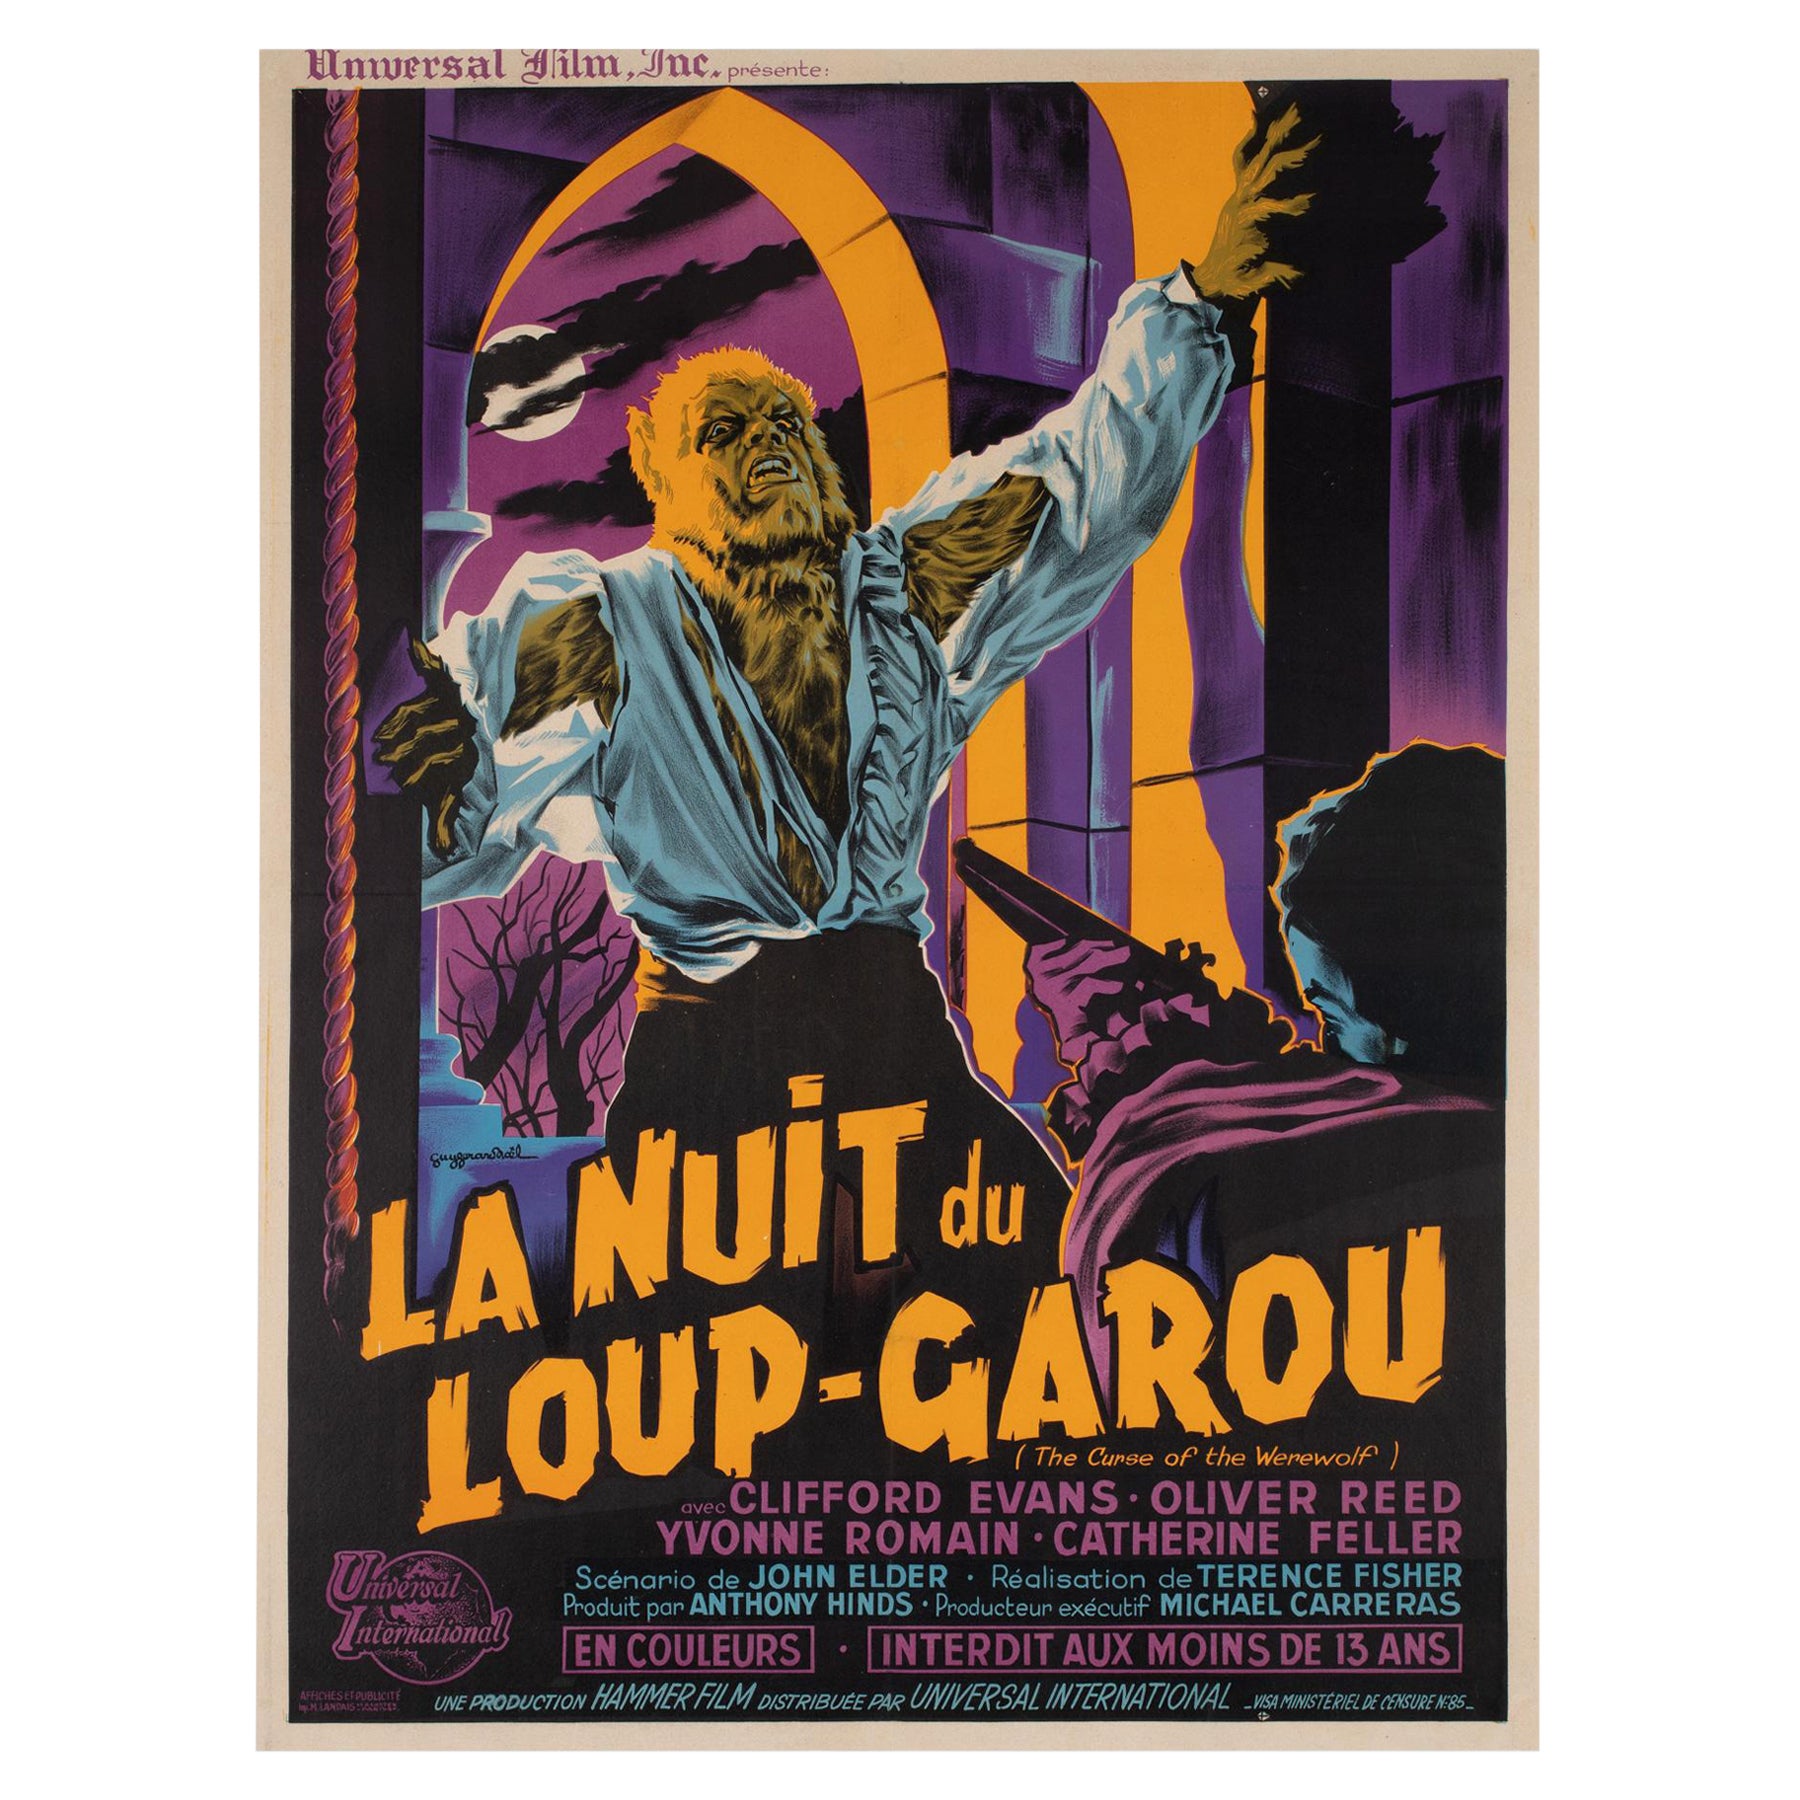 THE CURSE OF THE WEREWOLF 1961 Französisches Moyenne-Filmplakat, GUY GERARD NOEL